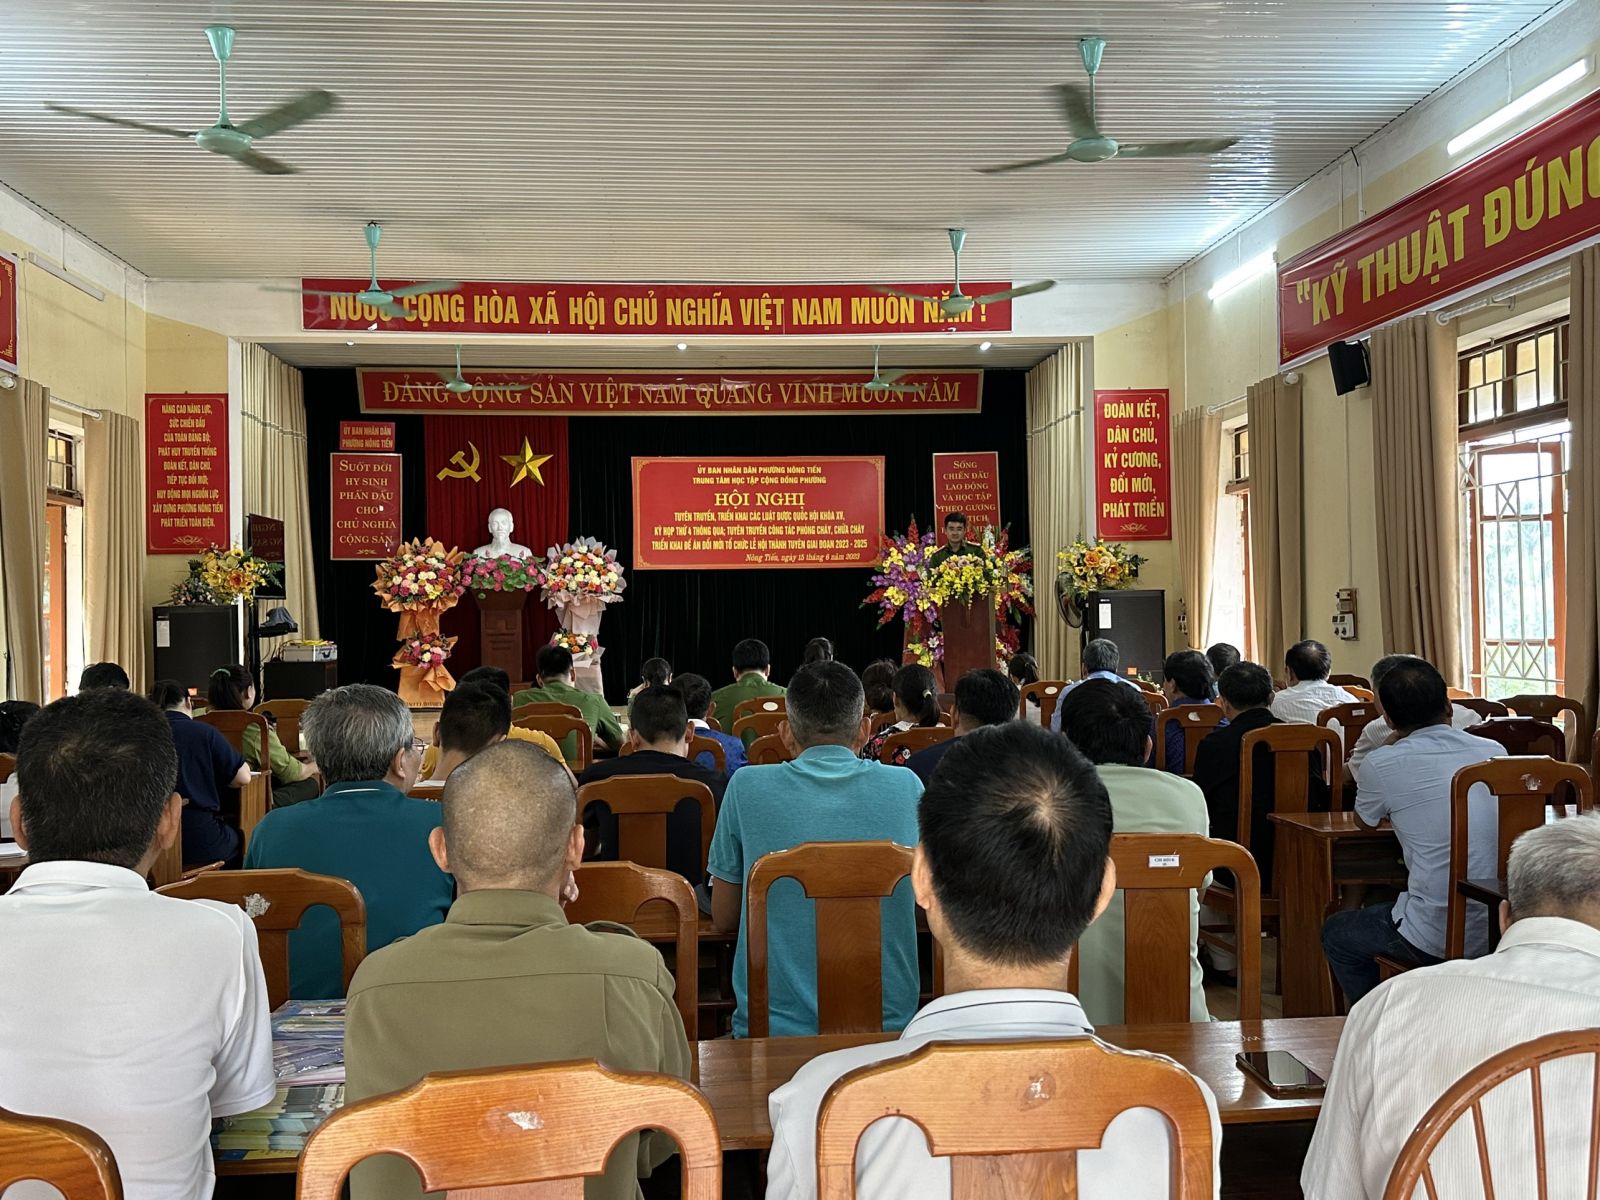 Đồng chỉ thượng tá Trần Quang Hữu - cán bộ đội công tác phòng cháy, Phòng cảnh sát PCCC & CHCN, Công an tỉnh Tuyên Quang tuyên truyền các quy định đảm bảo an toàn PCCC